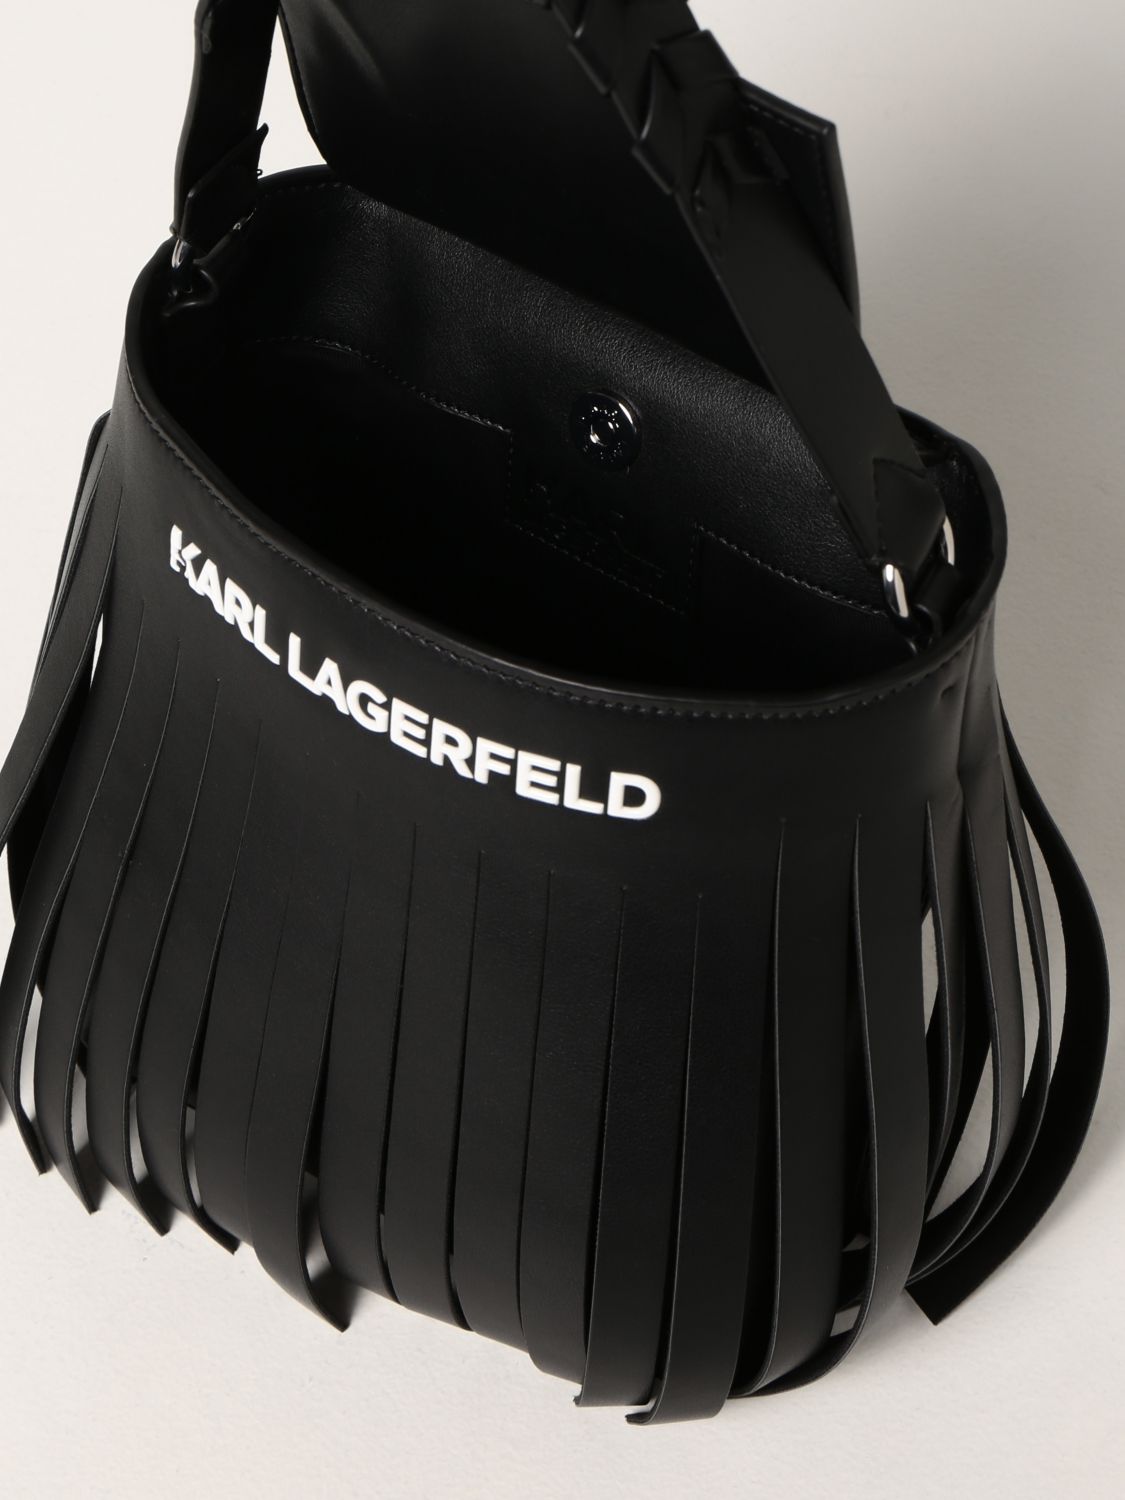 ミニバッグ カールラガーフェルド: ミニバッグ Karl Lagerfeld レディース ブラック 3